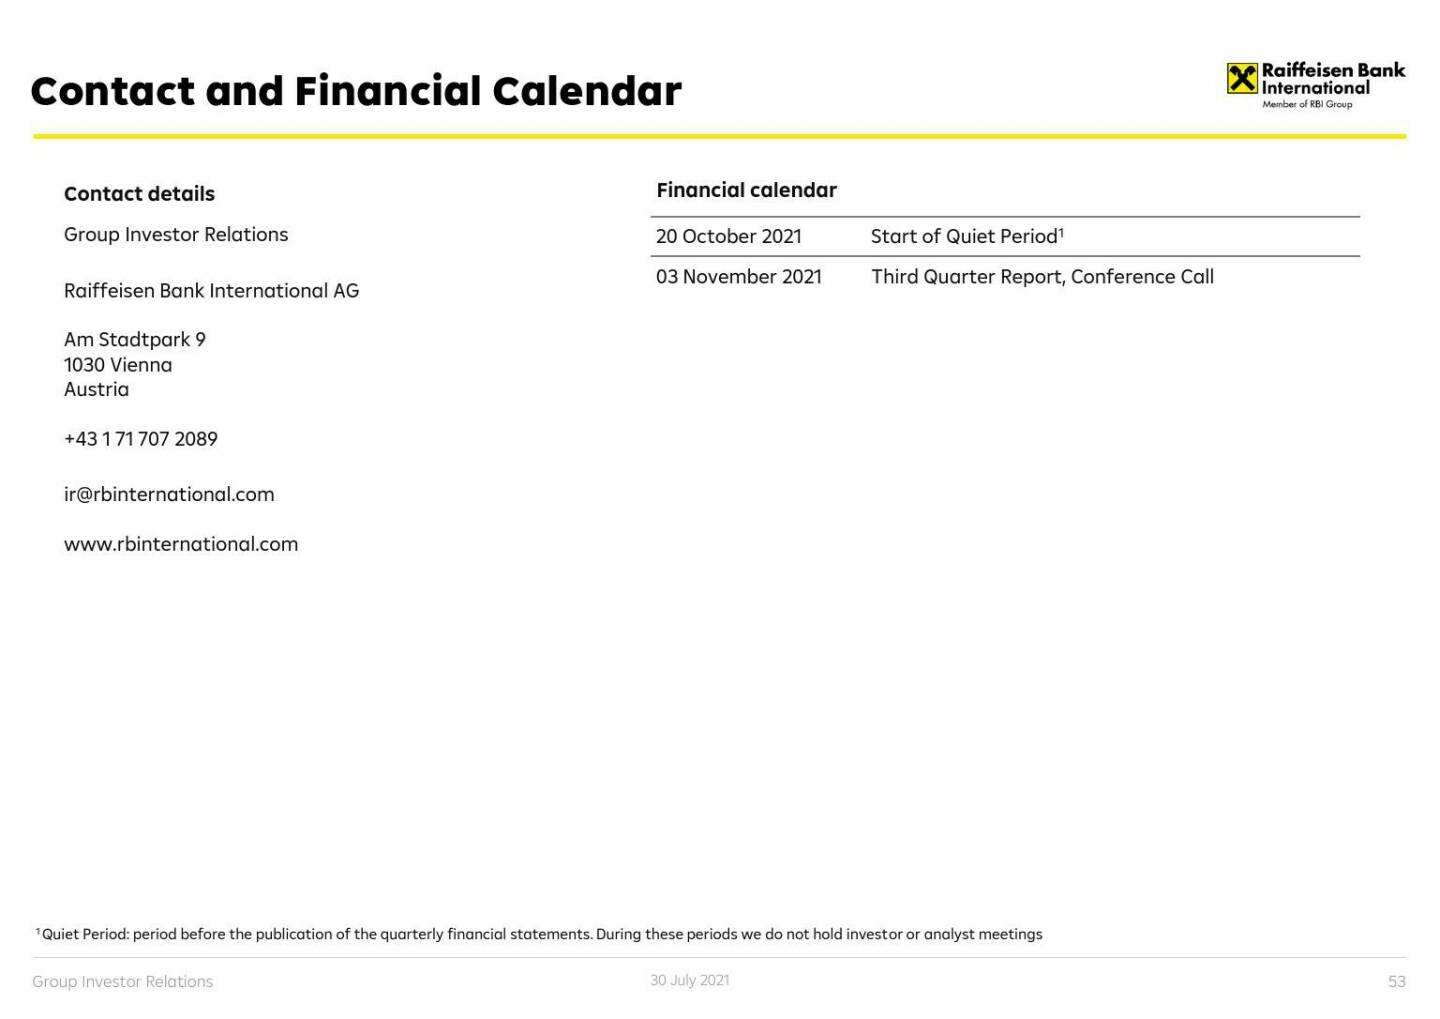 RBI - Contact and financial calendar